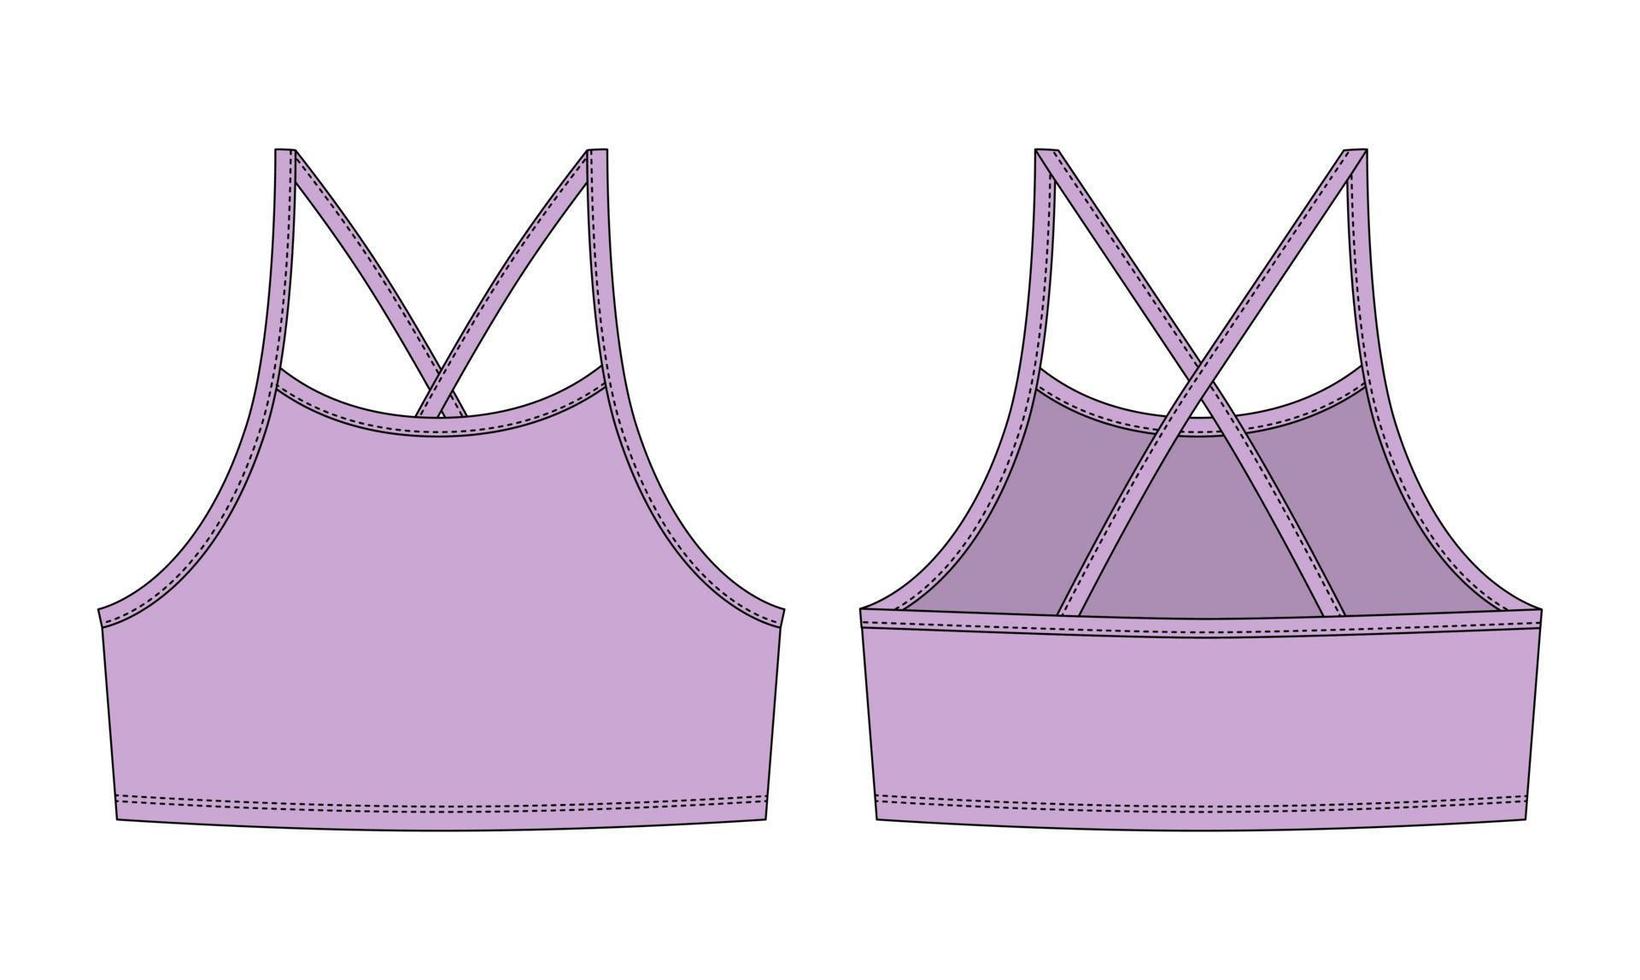 Mädchen Bralette technische Skizze. pastellviolette Farbe. Top-BH für Damen mit Designvorlage für Trägerunterwäsche. vektor